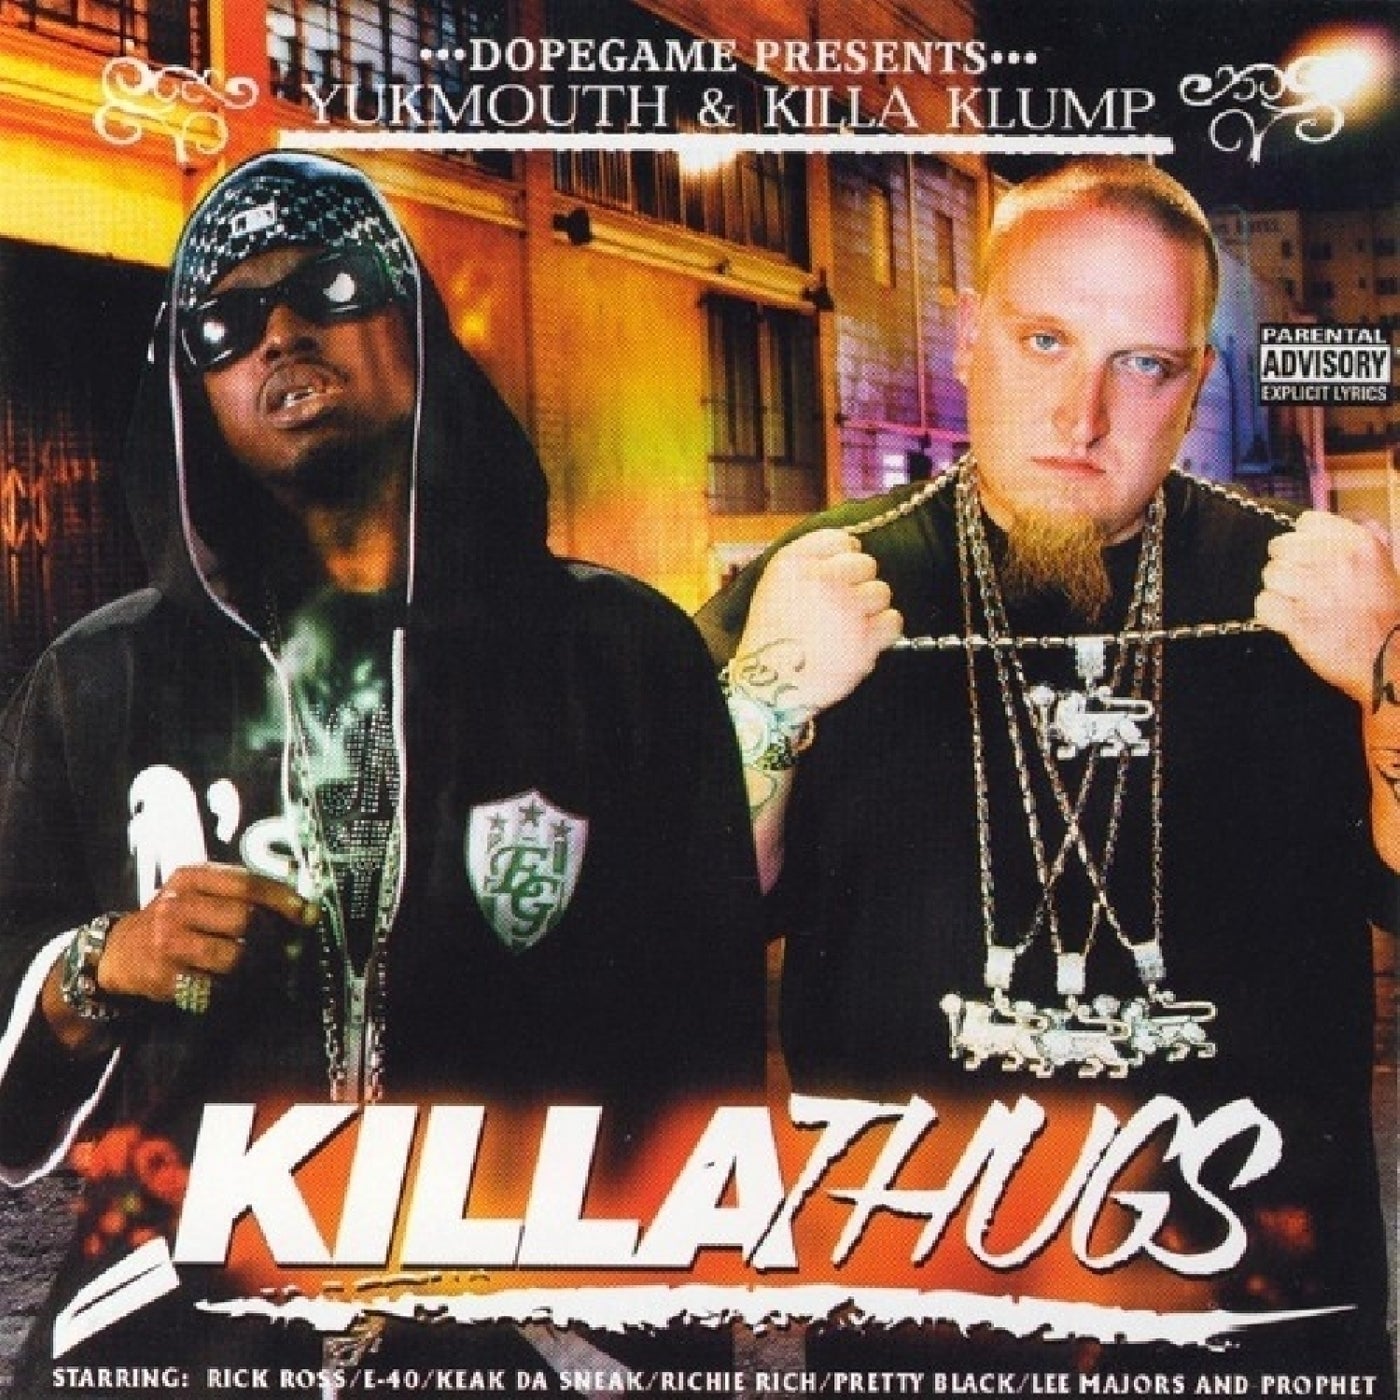 Killa Thugs by Yukmouth and Killa Klump on Beatsource